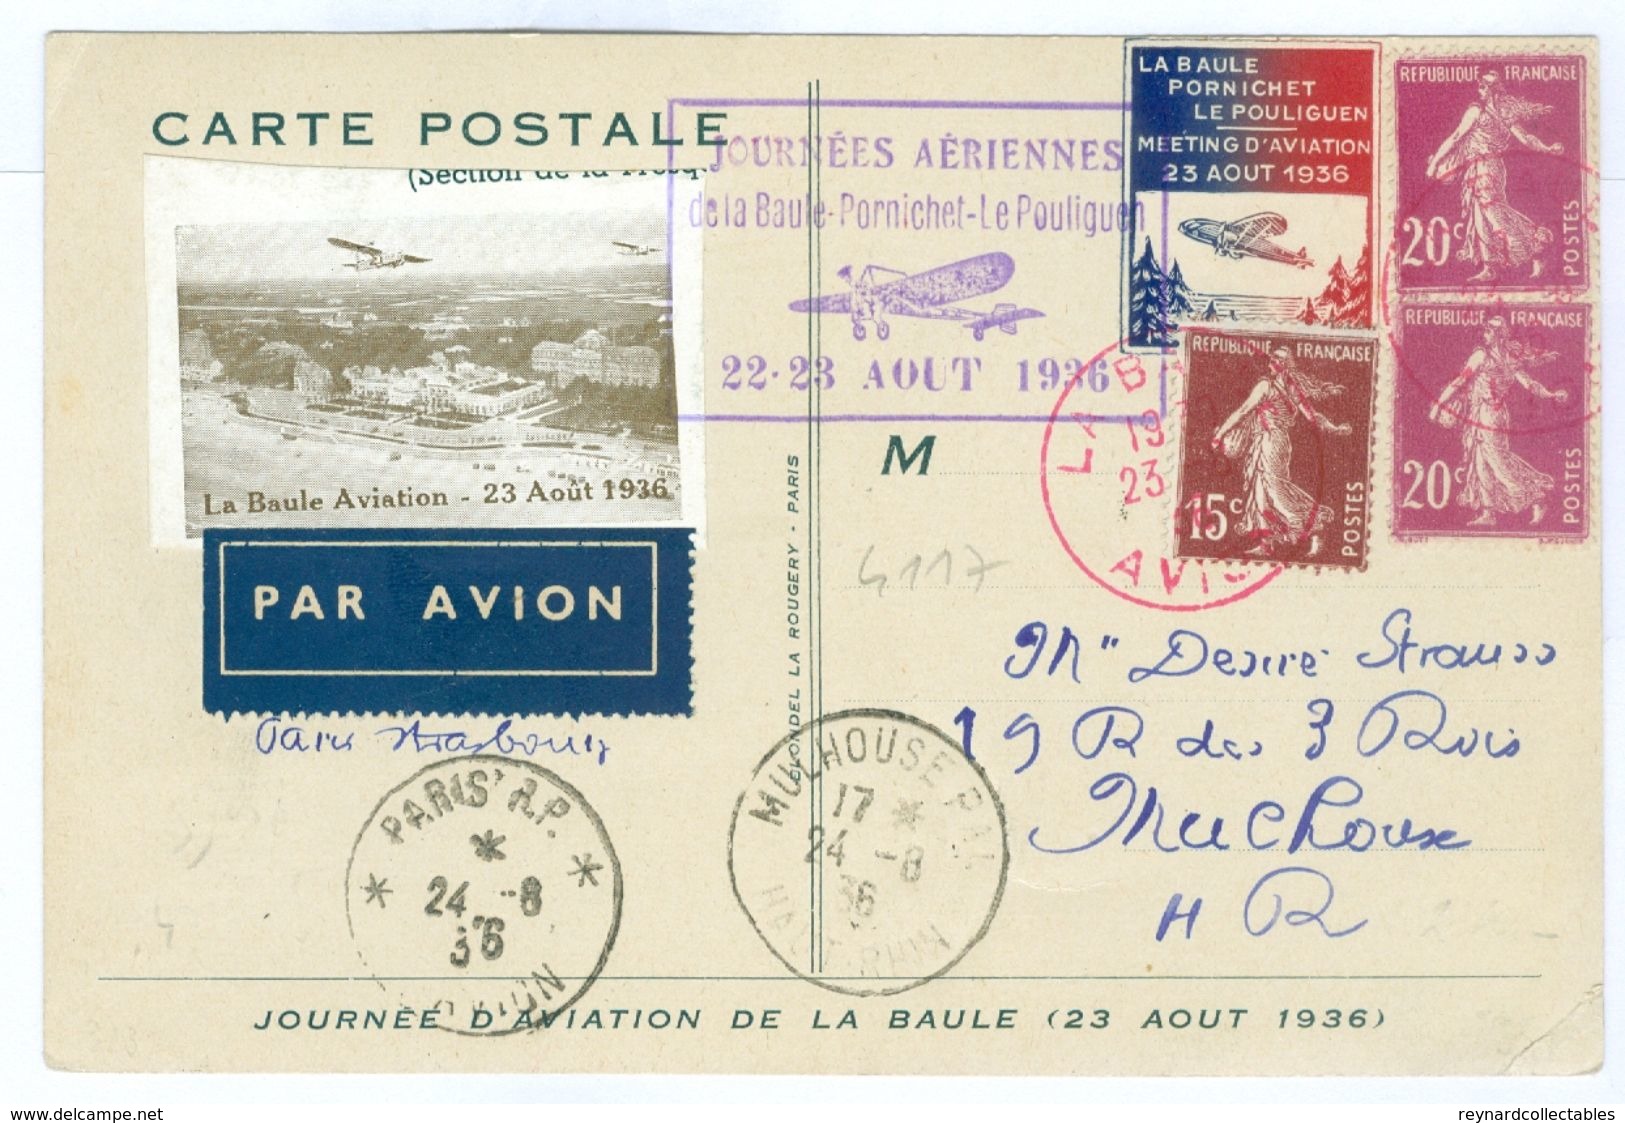 1936 France Aero Club De Atlantique Card, La Baule-Pornichet-Le Pouliguen With Vignettes/postmarks - 1927-1959 Covers & Documents